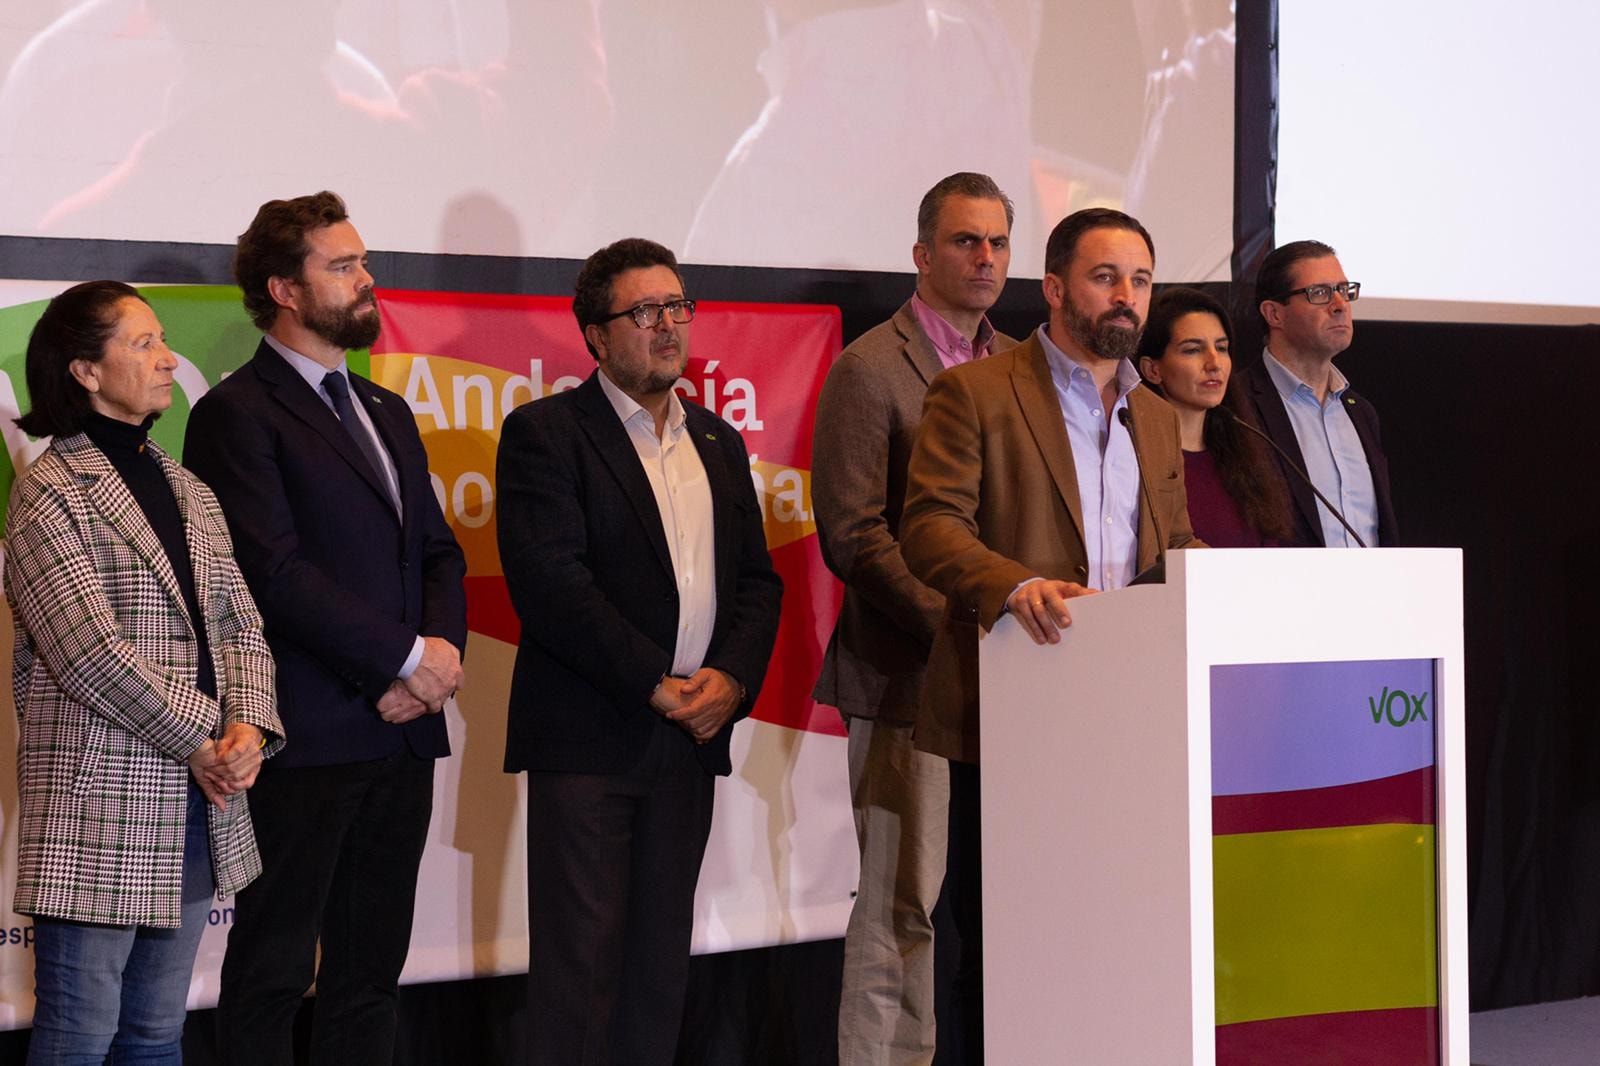 El líder de Vox, Santiago Abascal, junto al presidente del partido en Andalucía, Francisco Serrano, y otros miembros de la formación. FOTO: VOX ESPAÑA.